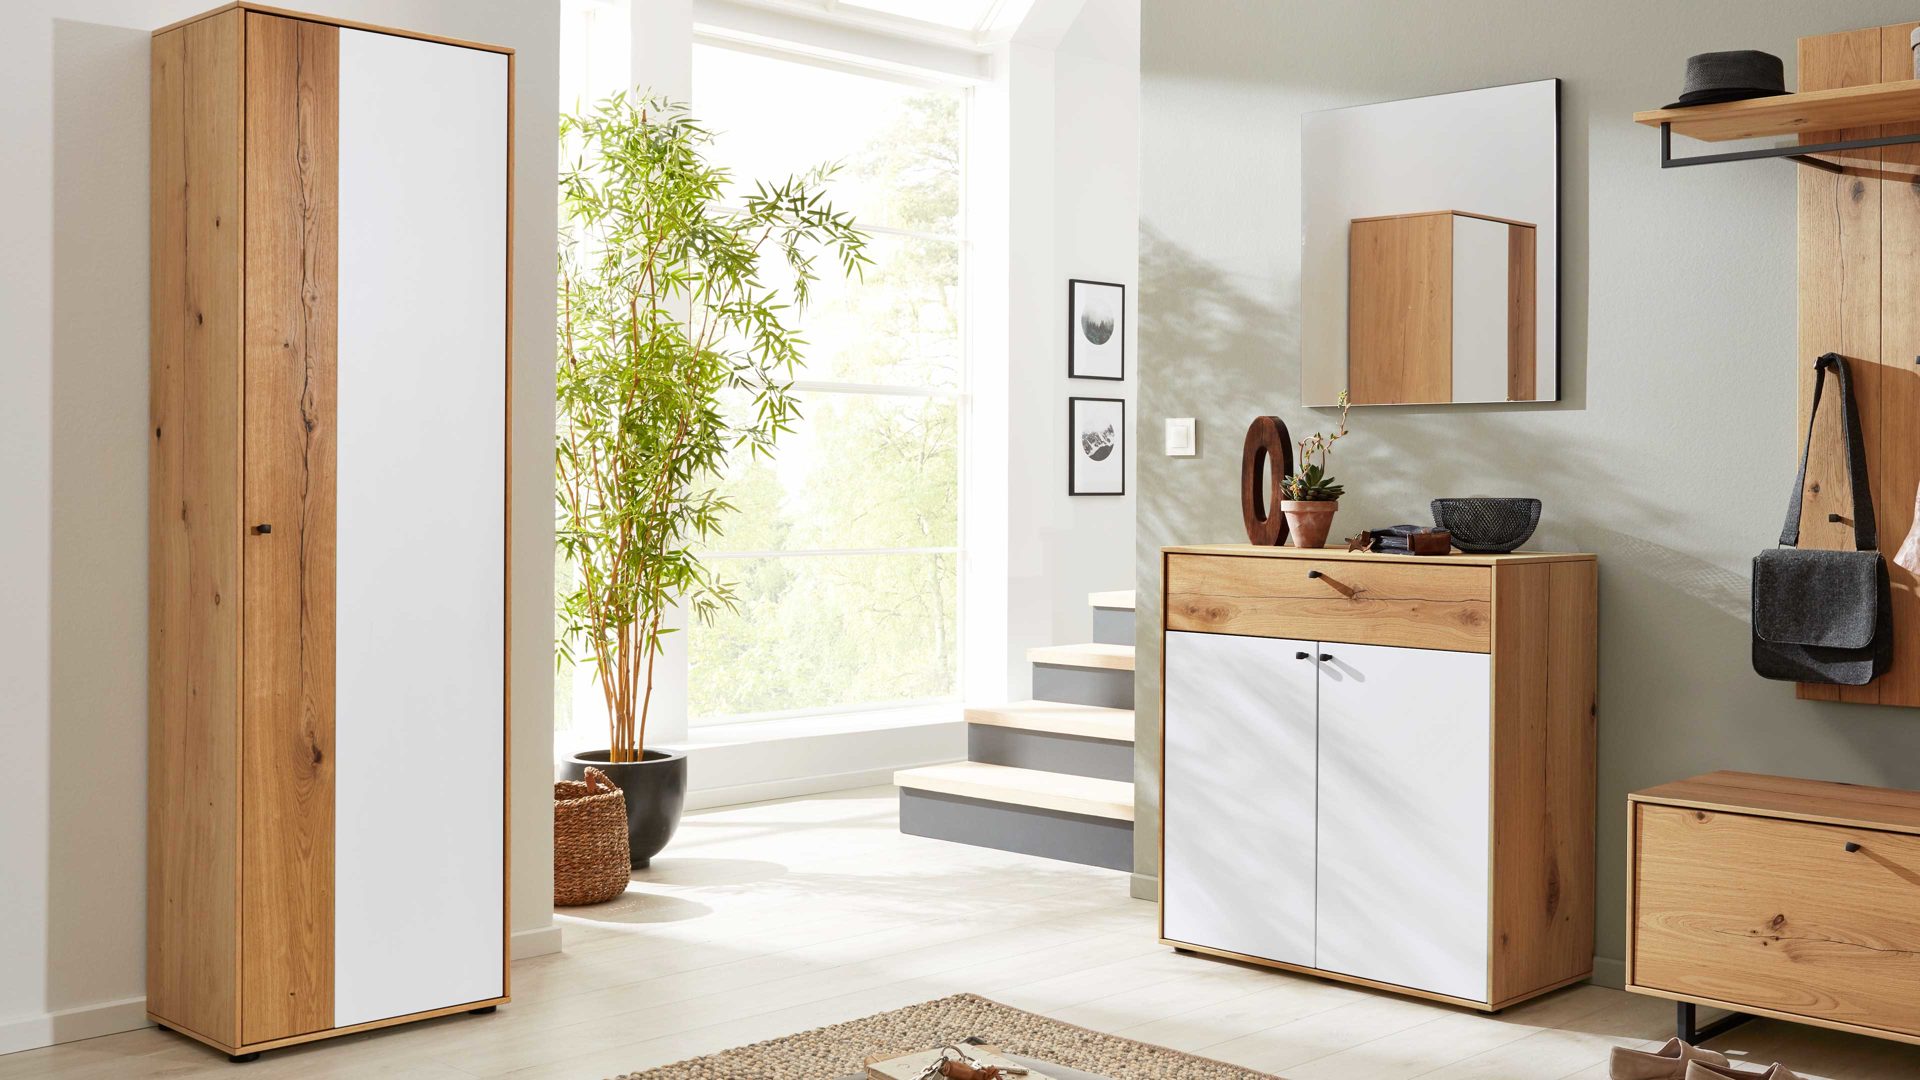 Garderobenschrank Interliving aus Holz in Weiß Interliving Garderoben Serie 6007 – Garderobenschrank weißer Mattlack & Asteiche – eine Tür